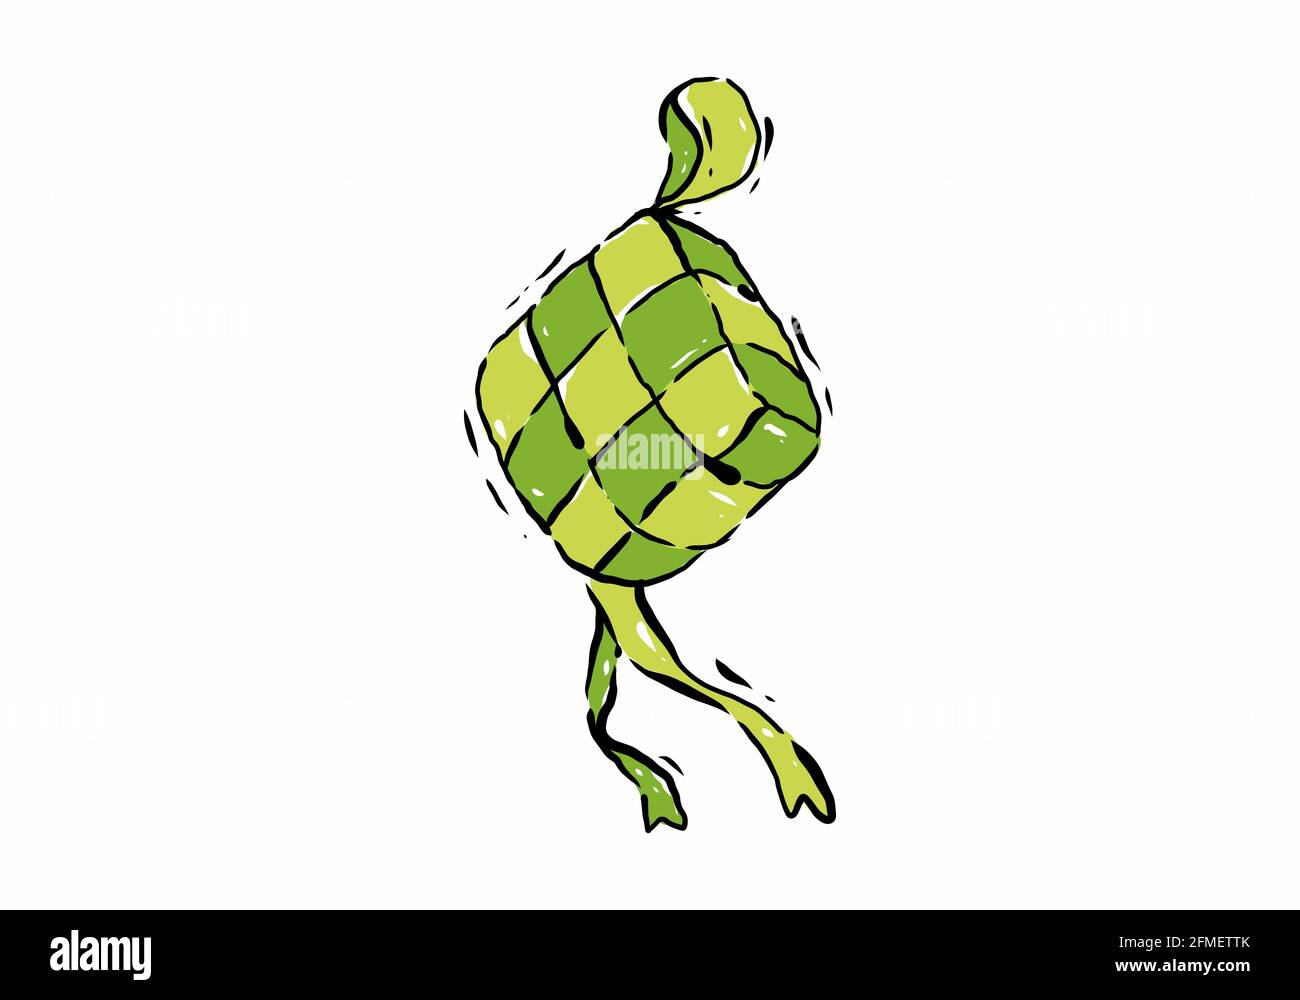 Digital illustration drawing of green ketupat design Stock Vector